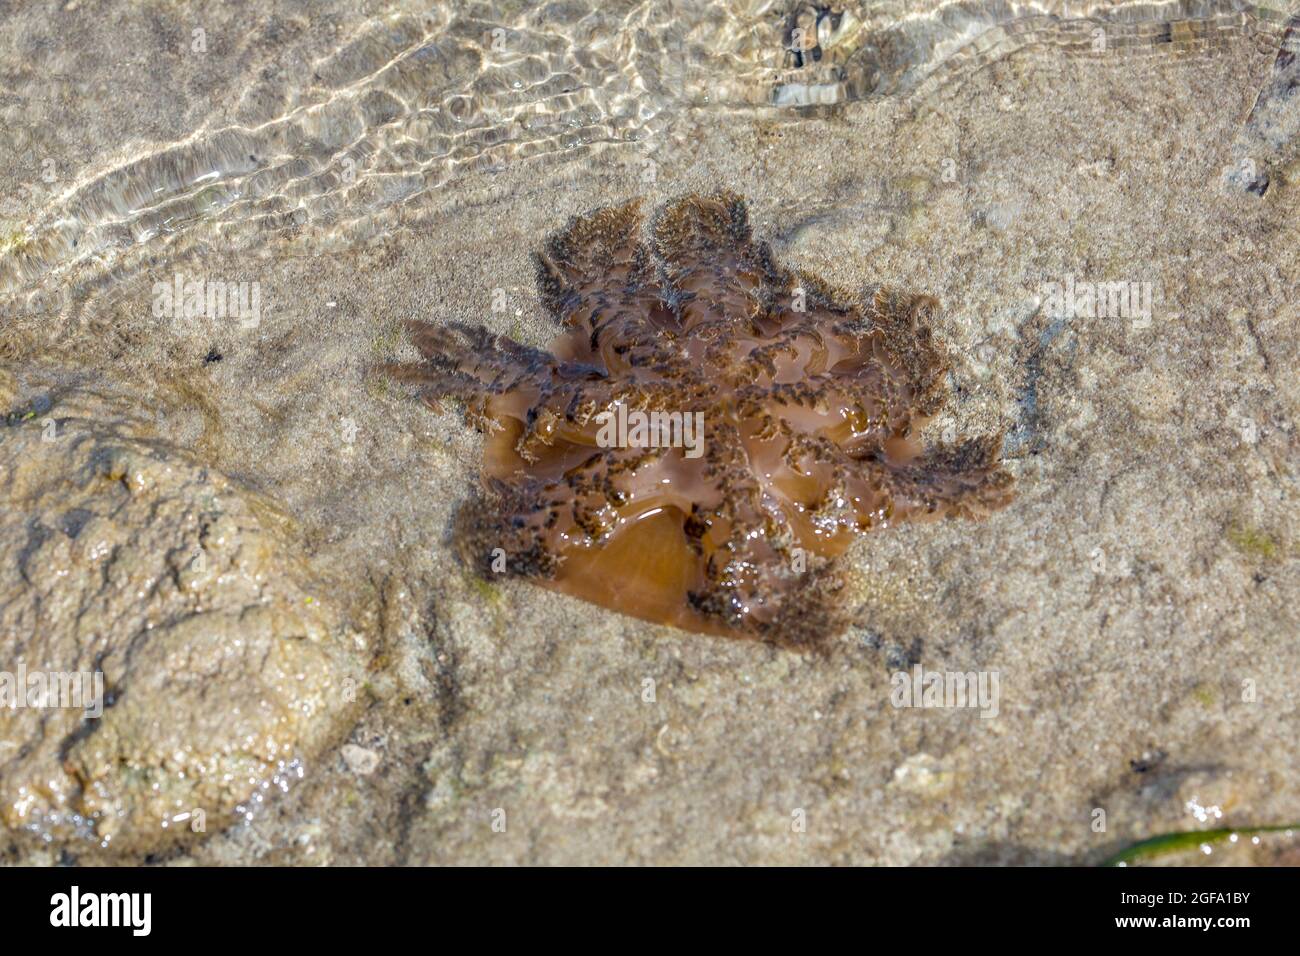 Esta medusa de arriba abajo, Cassiopea medusae, ha sido lavada a tierra en marea alta y probablemente perecerá una vez que el océano se retira, Yap, Micronesia. Foto de stock